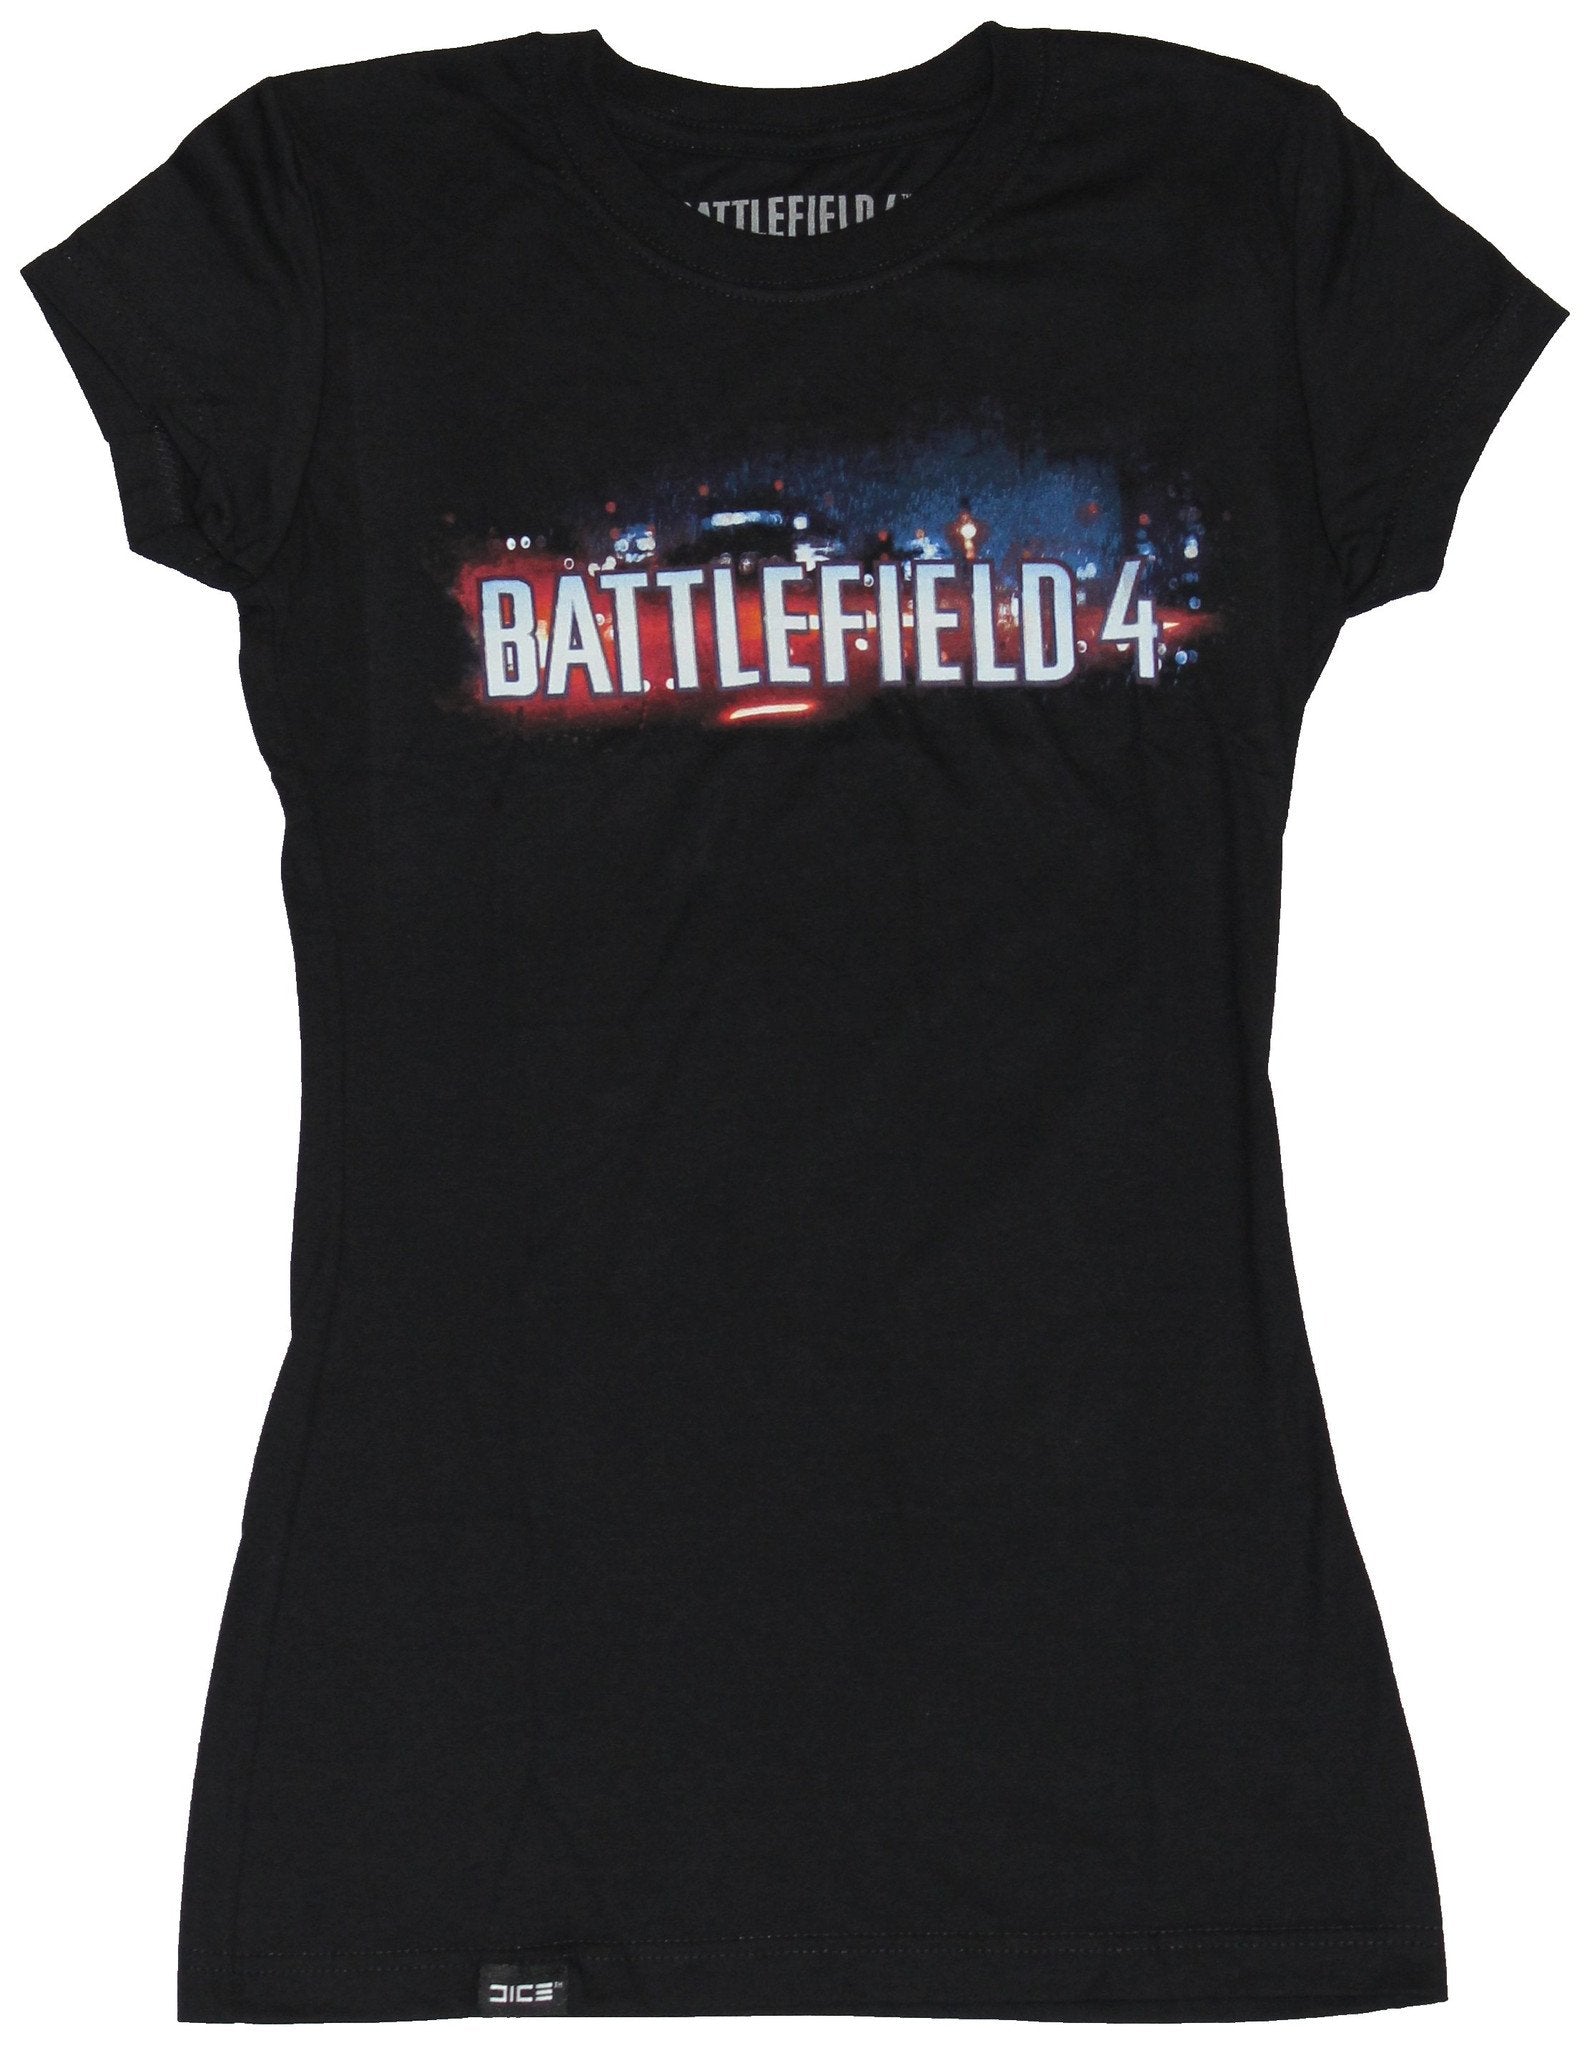 Battlefield 4 Girls Juniors T-Shirt - Horizontal White Word Logo Image